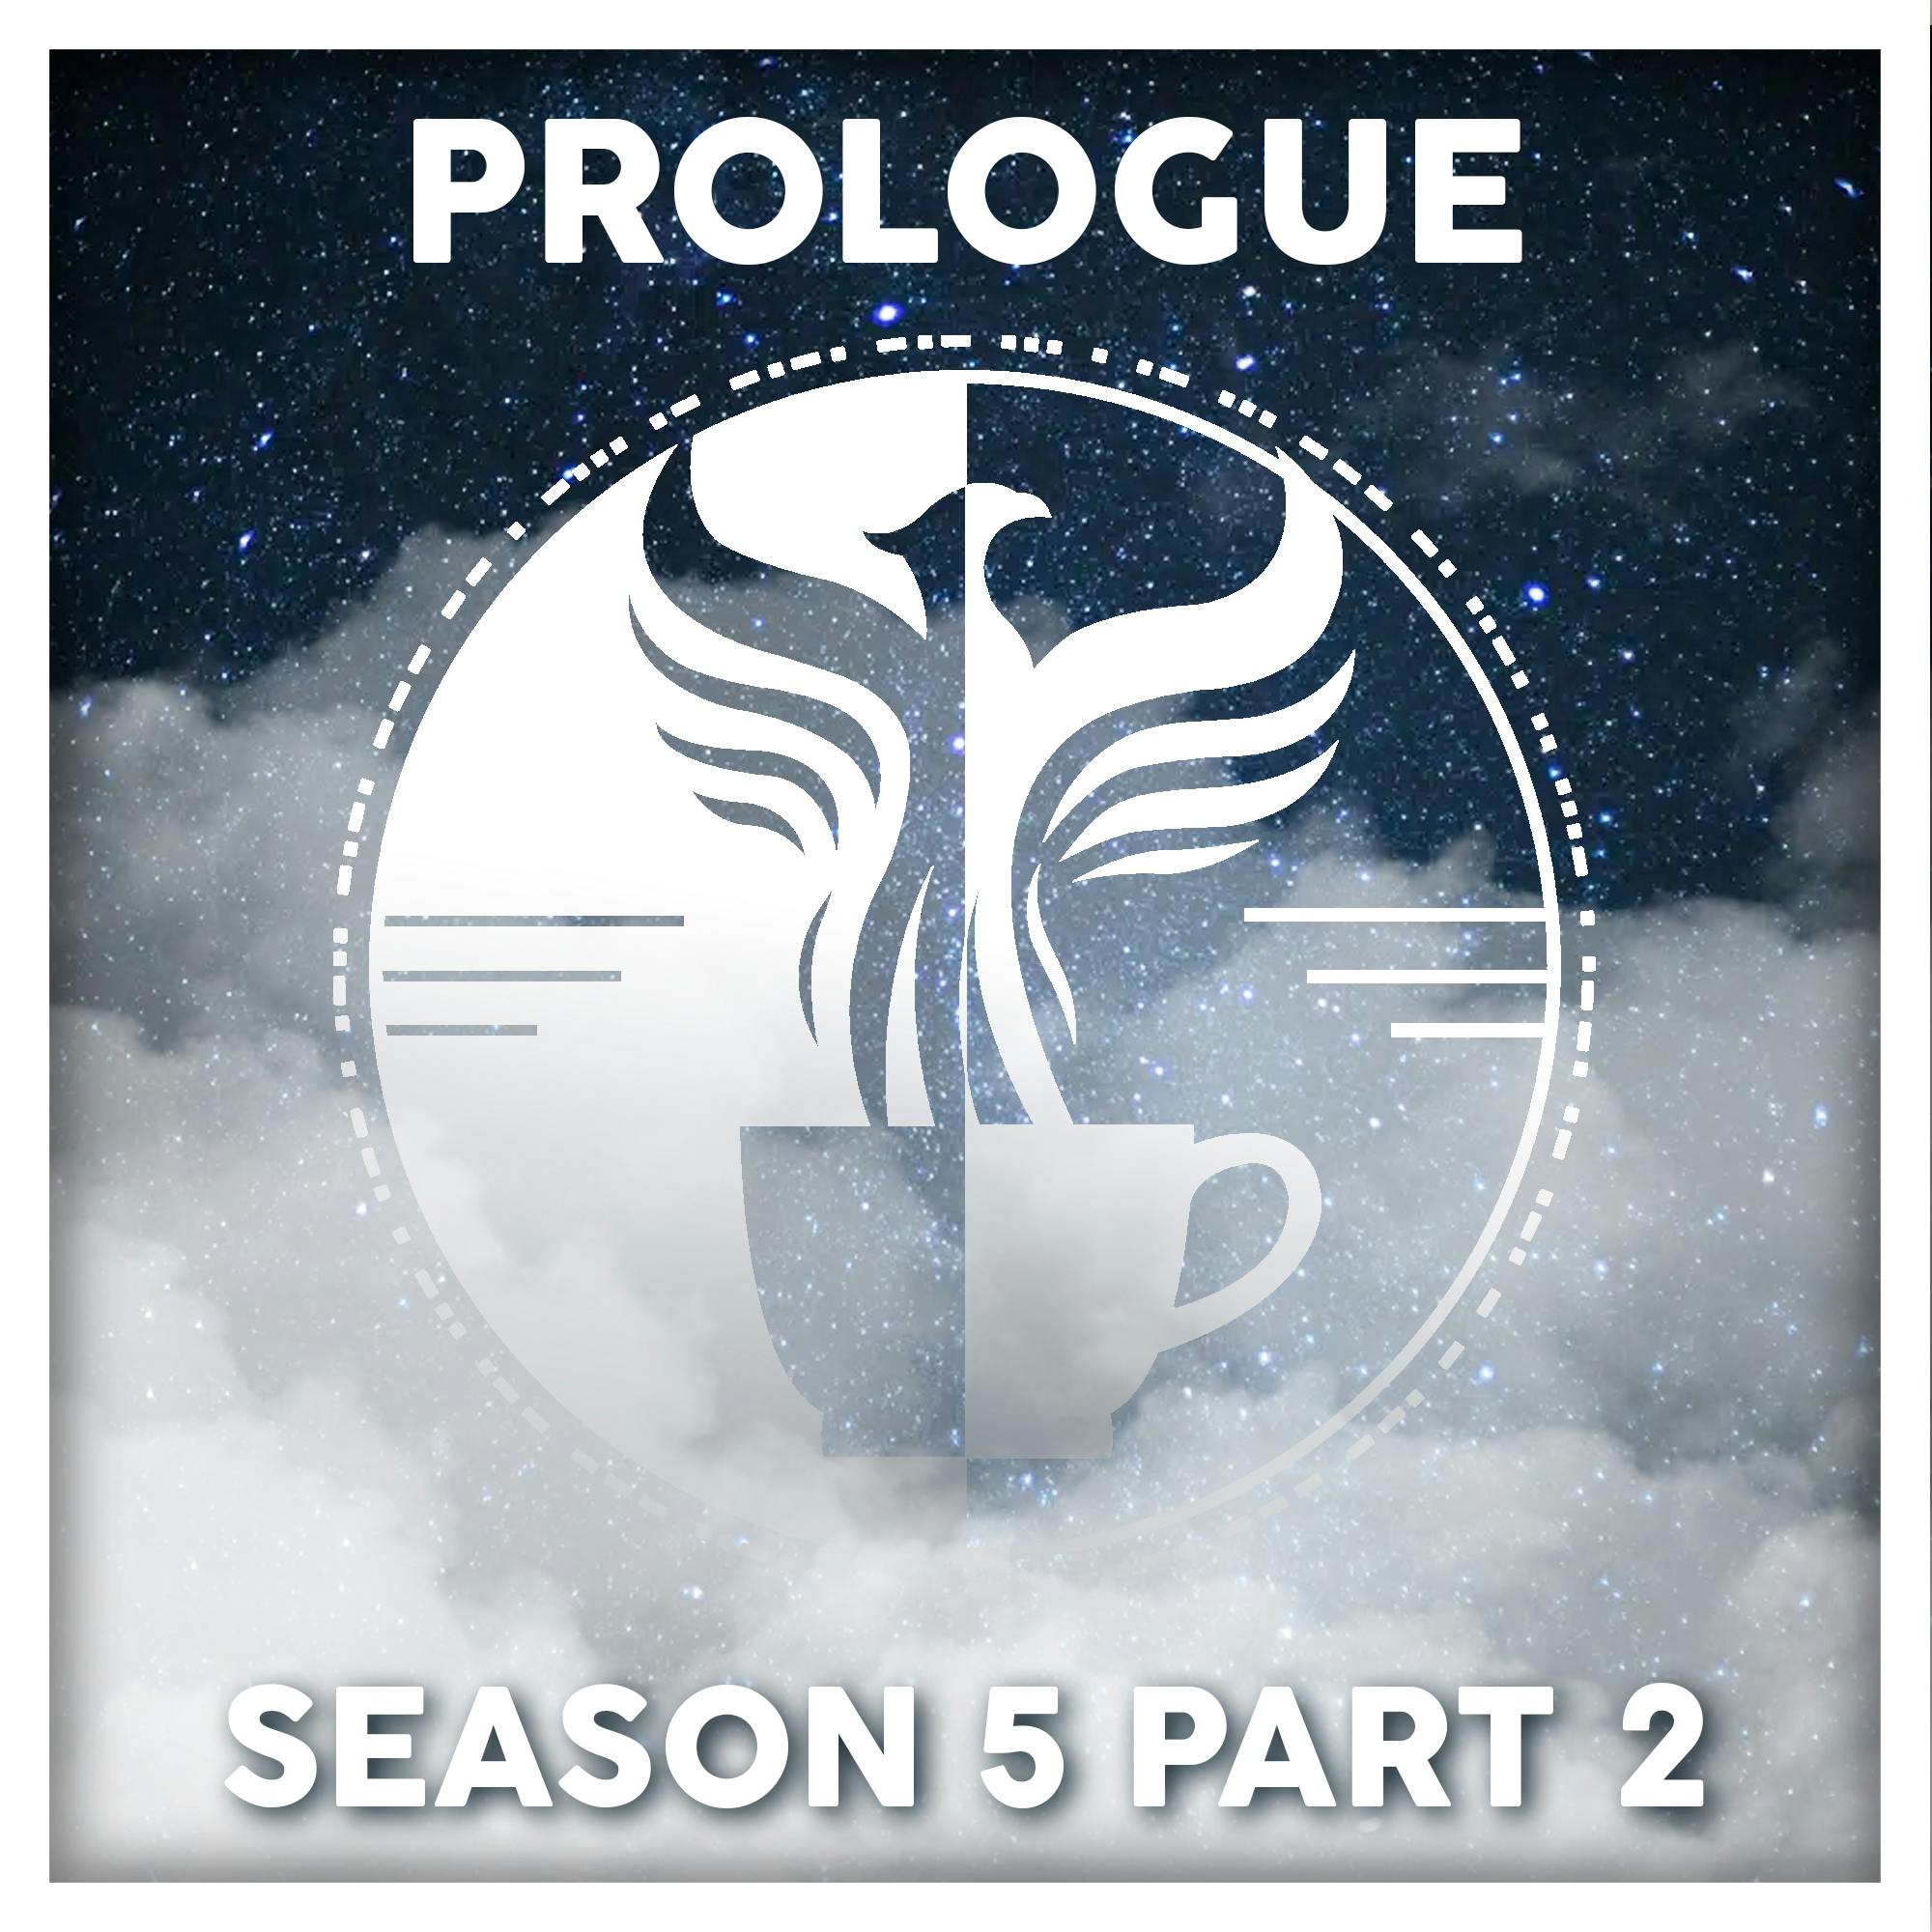 Prologue - Season 5 Part 2